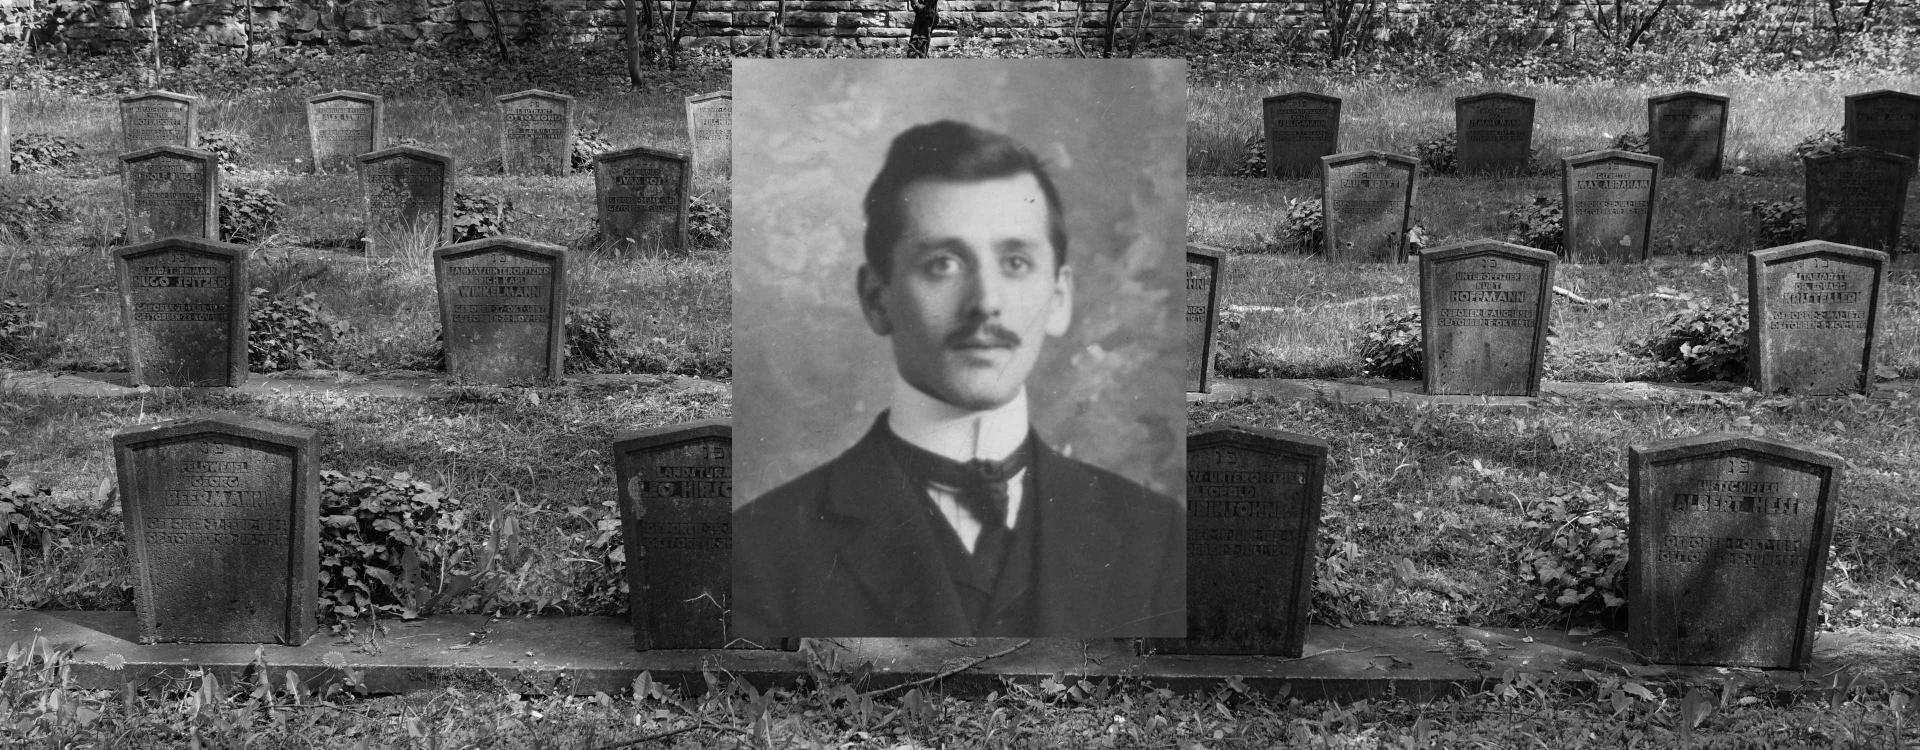 Grabsteine auf einem Friedhof, darüber das Porträt eines Mannes.